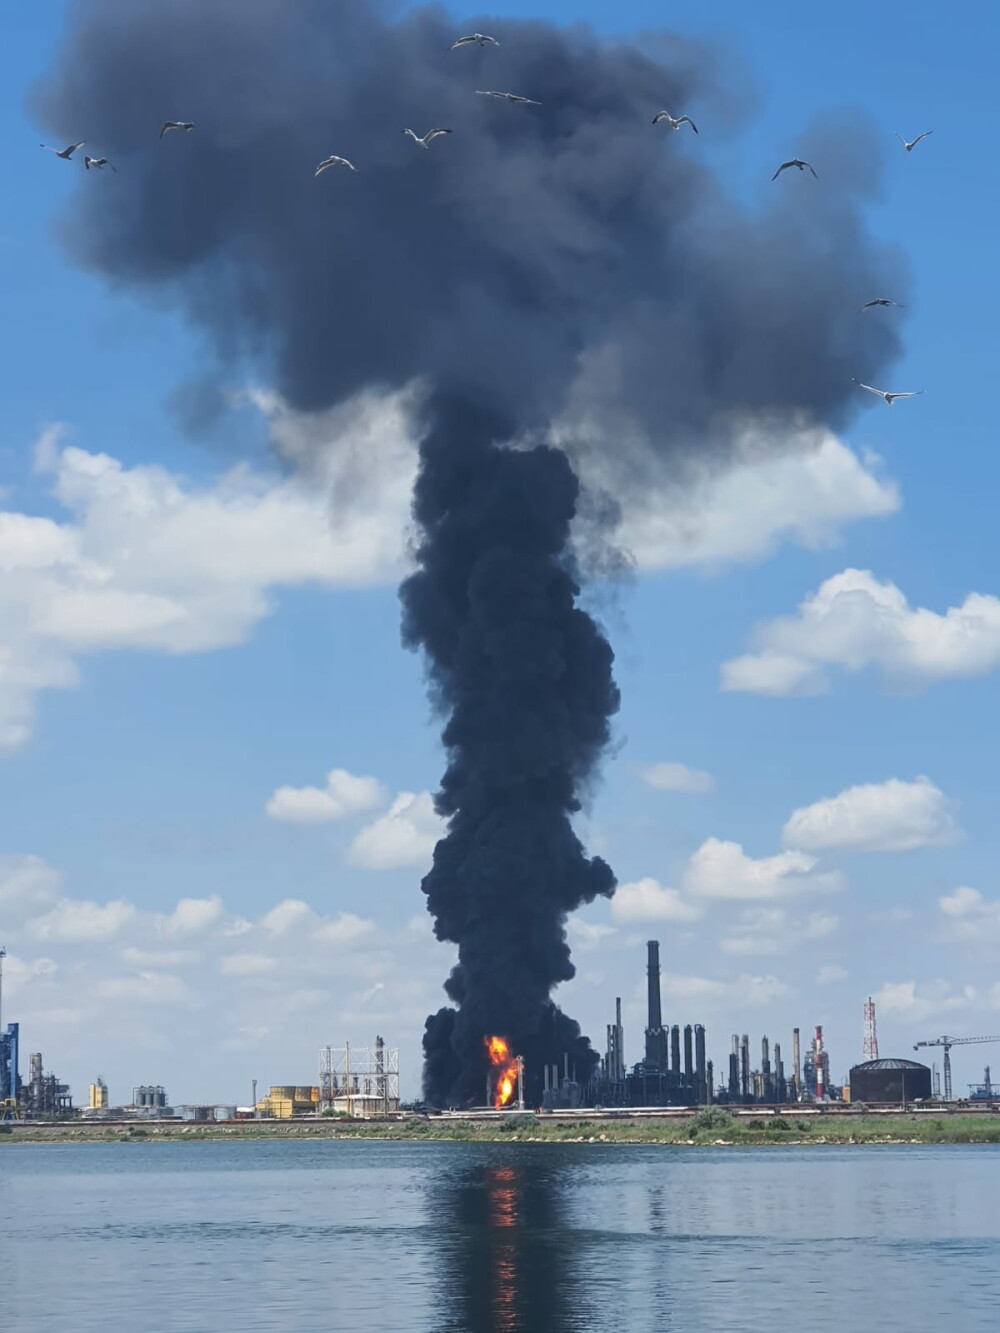 ISU Constanța: „Explozia de la Petromidia s-ar fi produs la o instalație de gaz de la rafinărie” - Imaginea 5